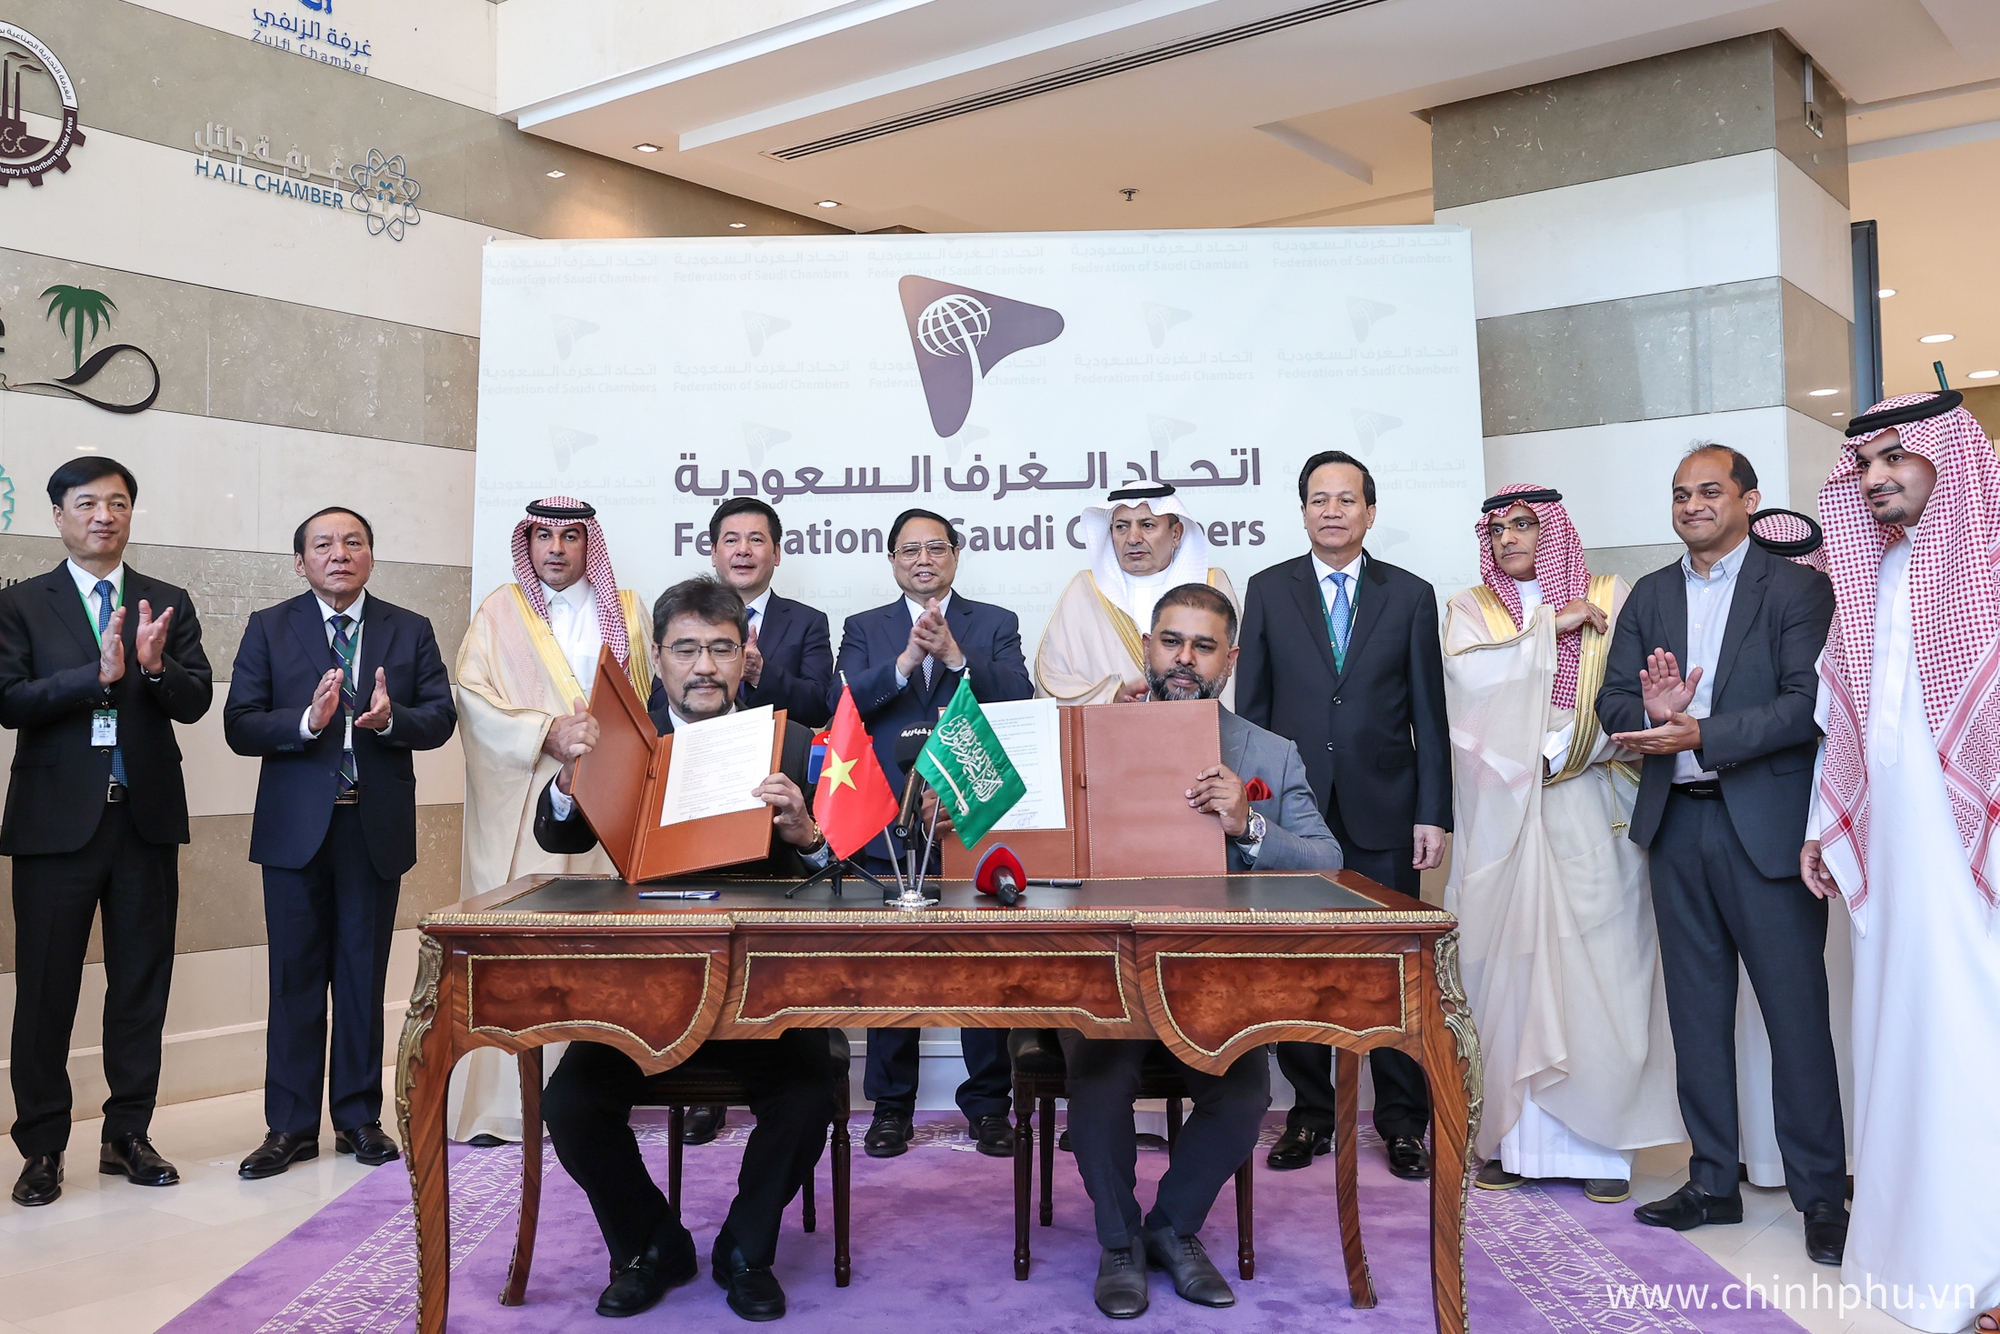 Thủ tướng chứng kiến lễ ký kết biên bản ghi nhớ hợp tác giữa các liên đoàn, công ty, cơ quan của Việt Nam và Saudi Arabia - Ảnh: VGP/Nhật Bắc